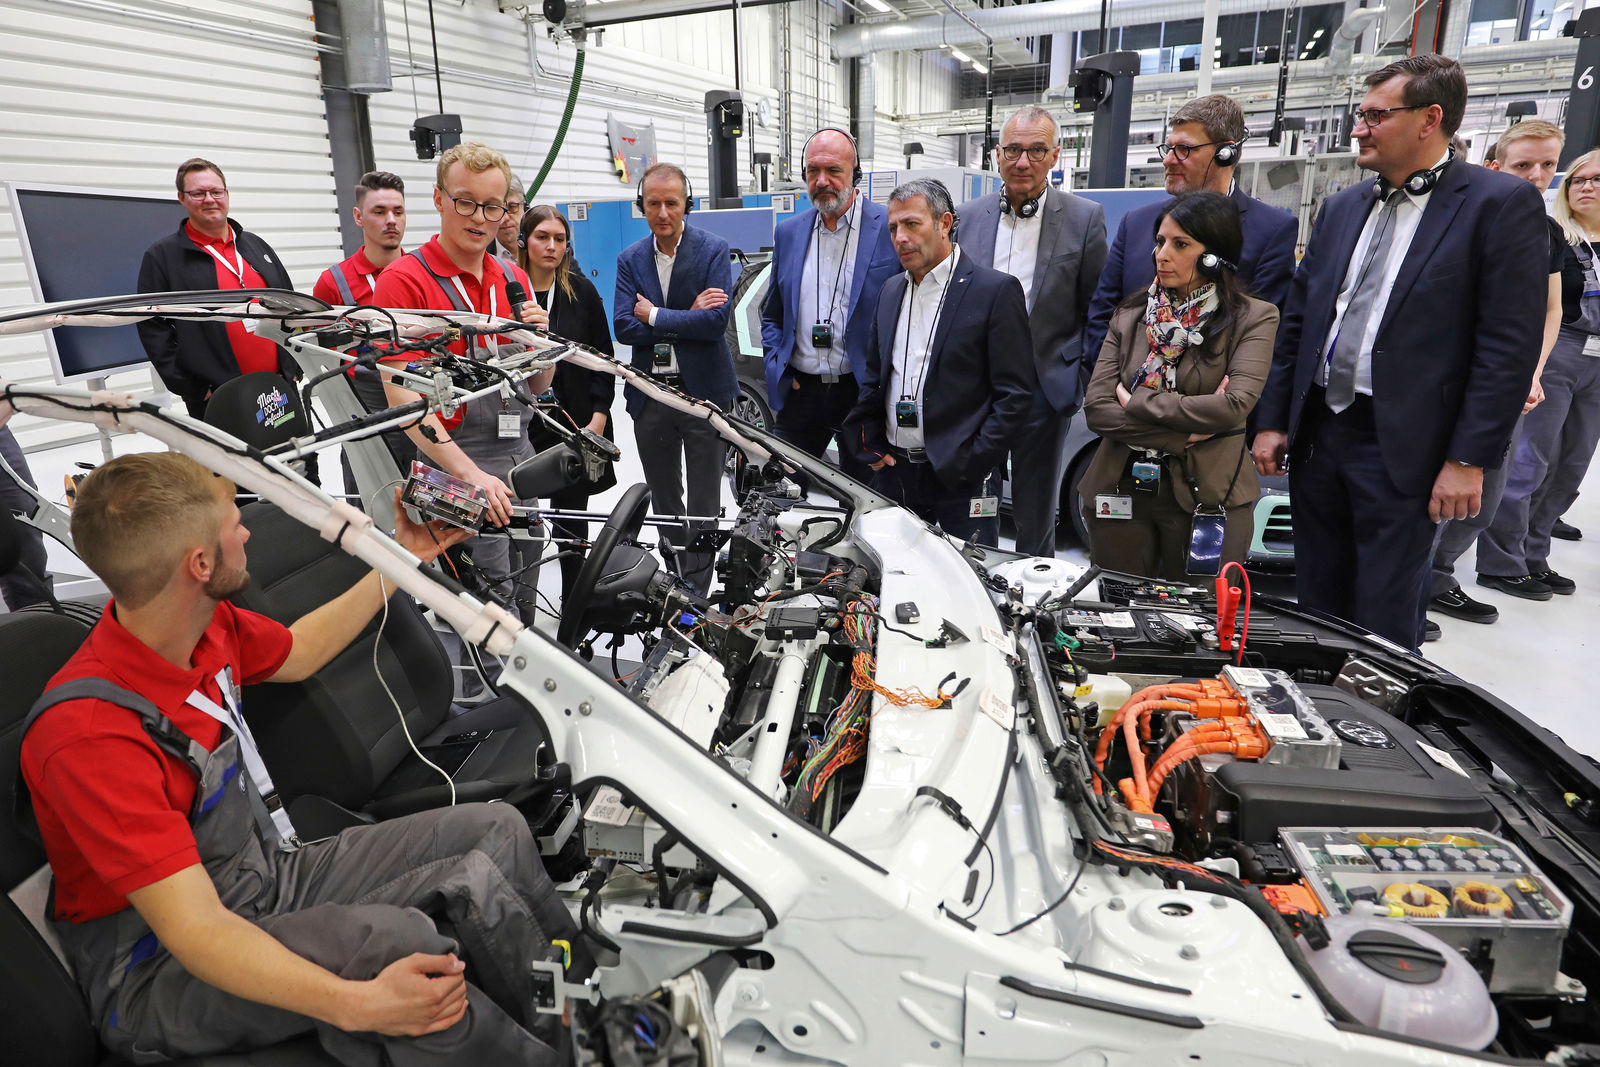 Neues Lernen — Volkswagen macht Berufsausbildung fit für Transformation und Zukunft